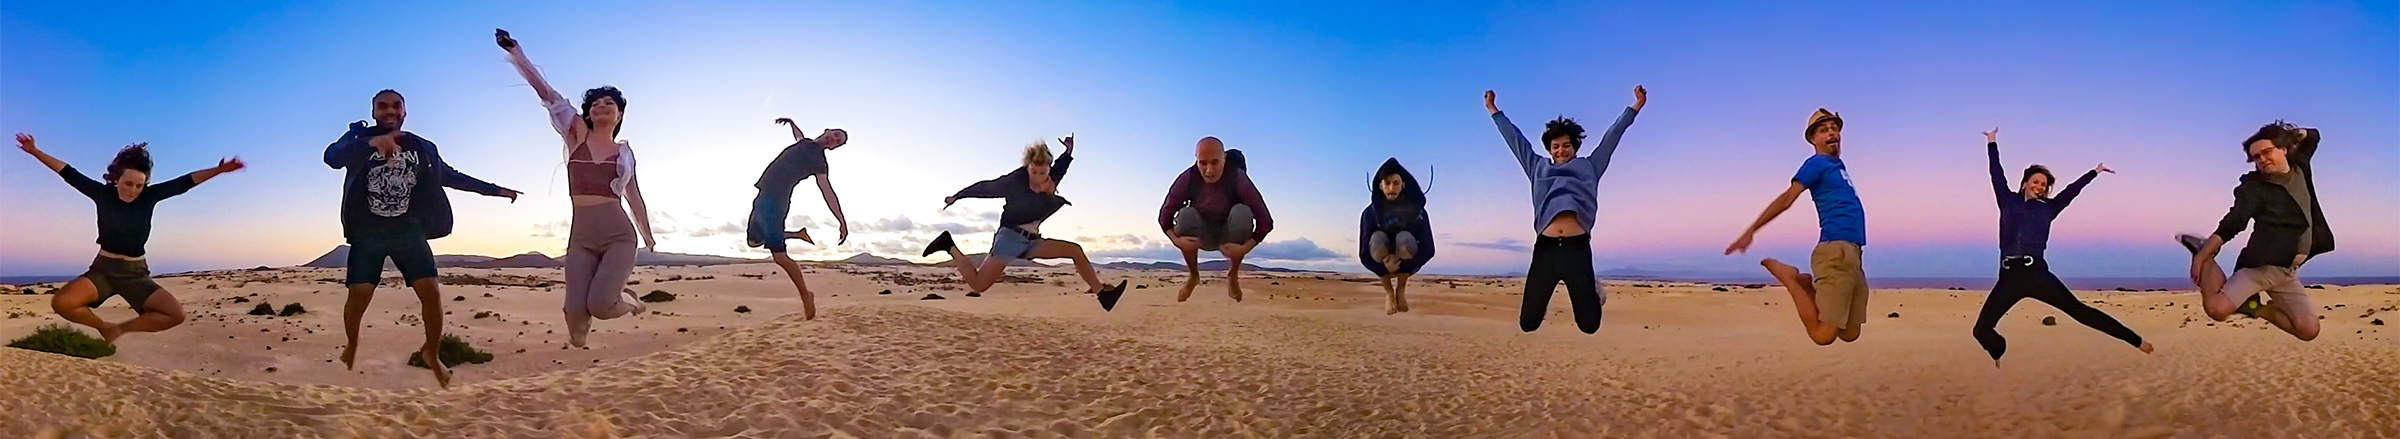 SmarterQueue Team jumping in sand dunes